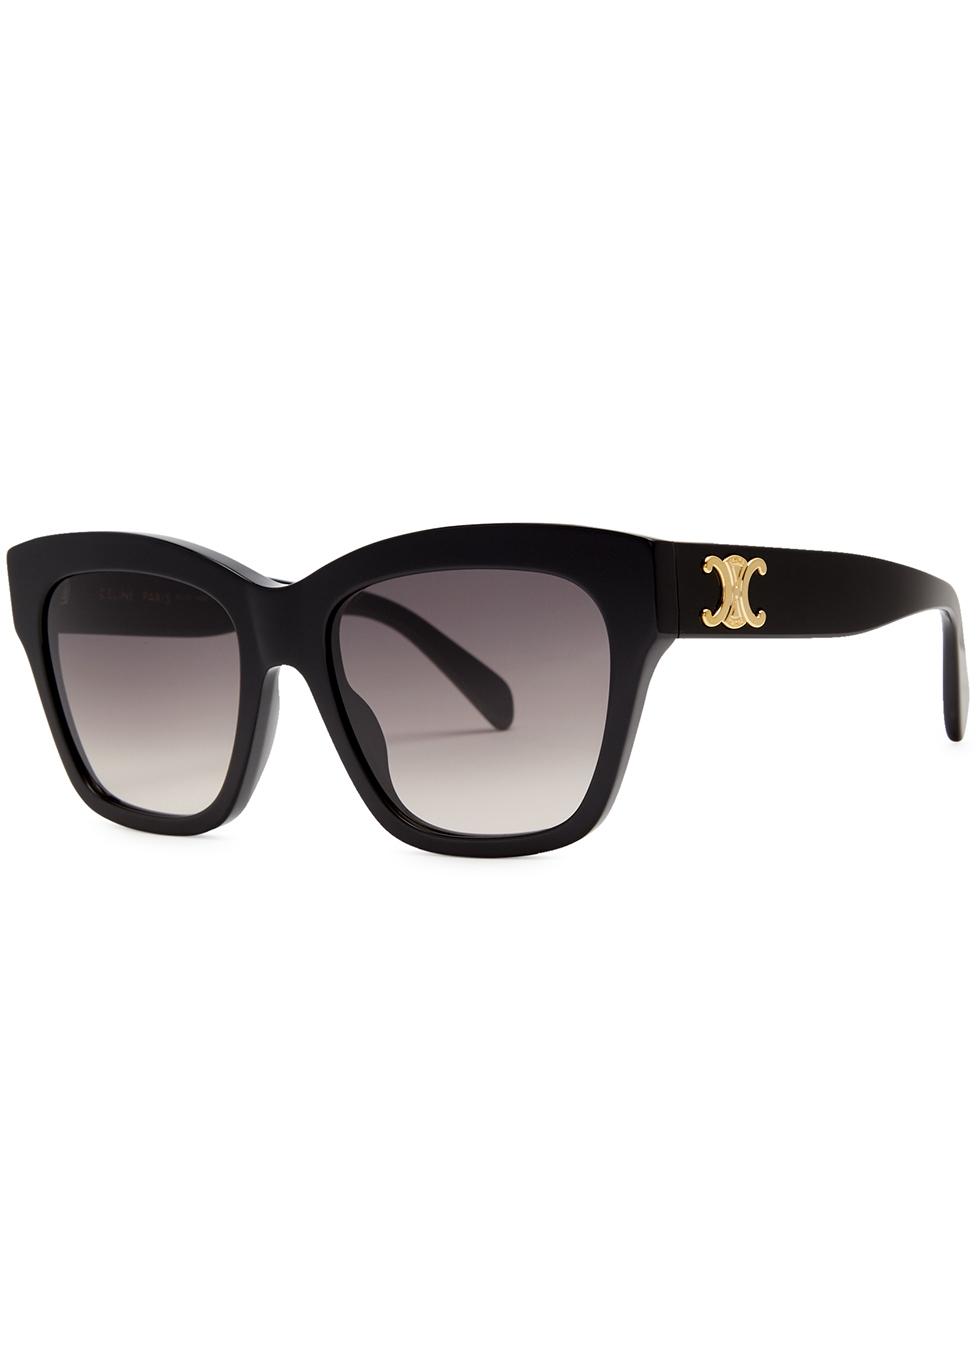 Chanel 5417 Sunglasses Black/Grey Square Women